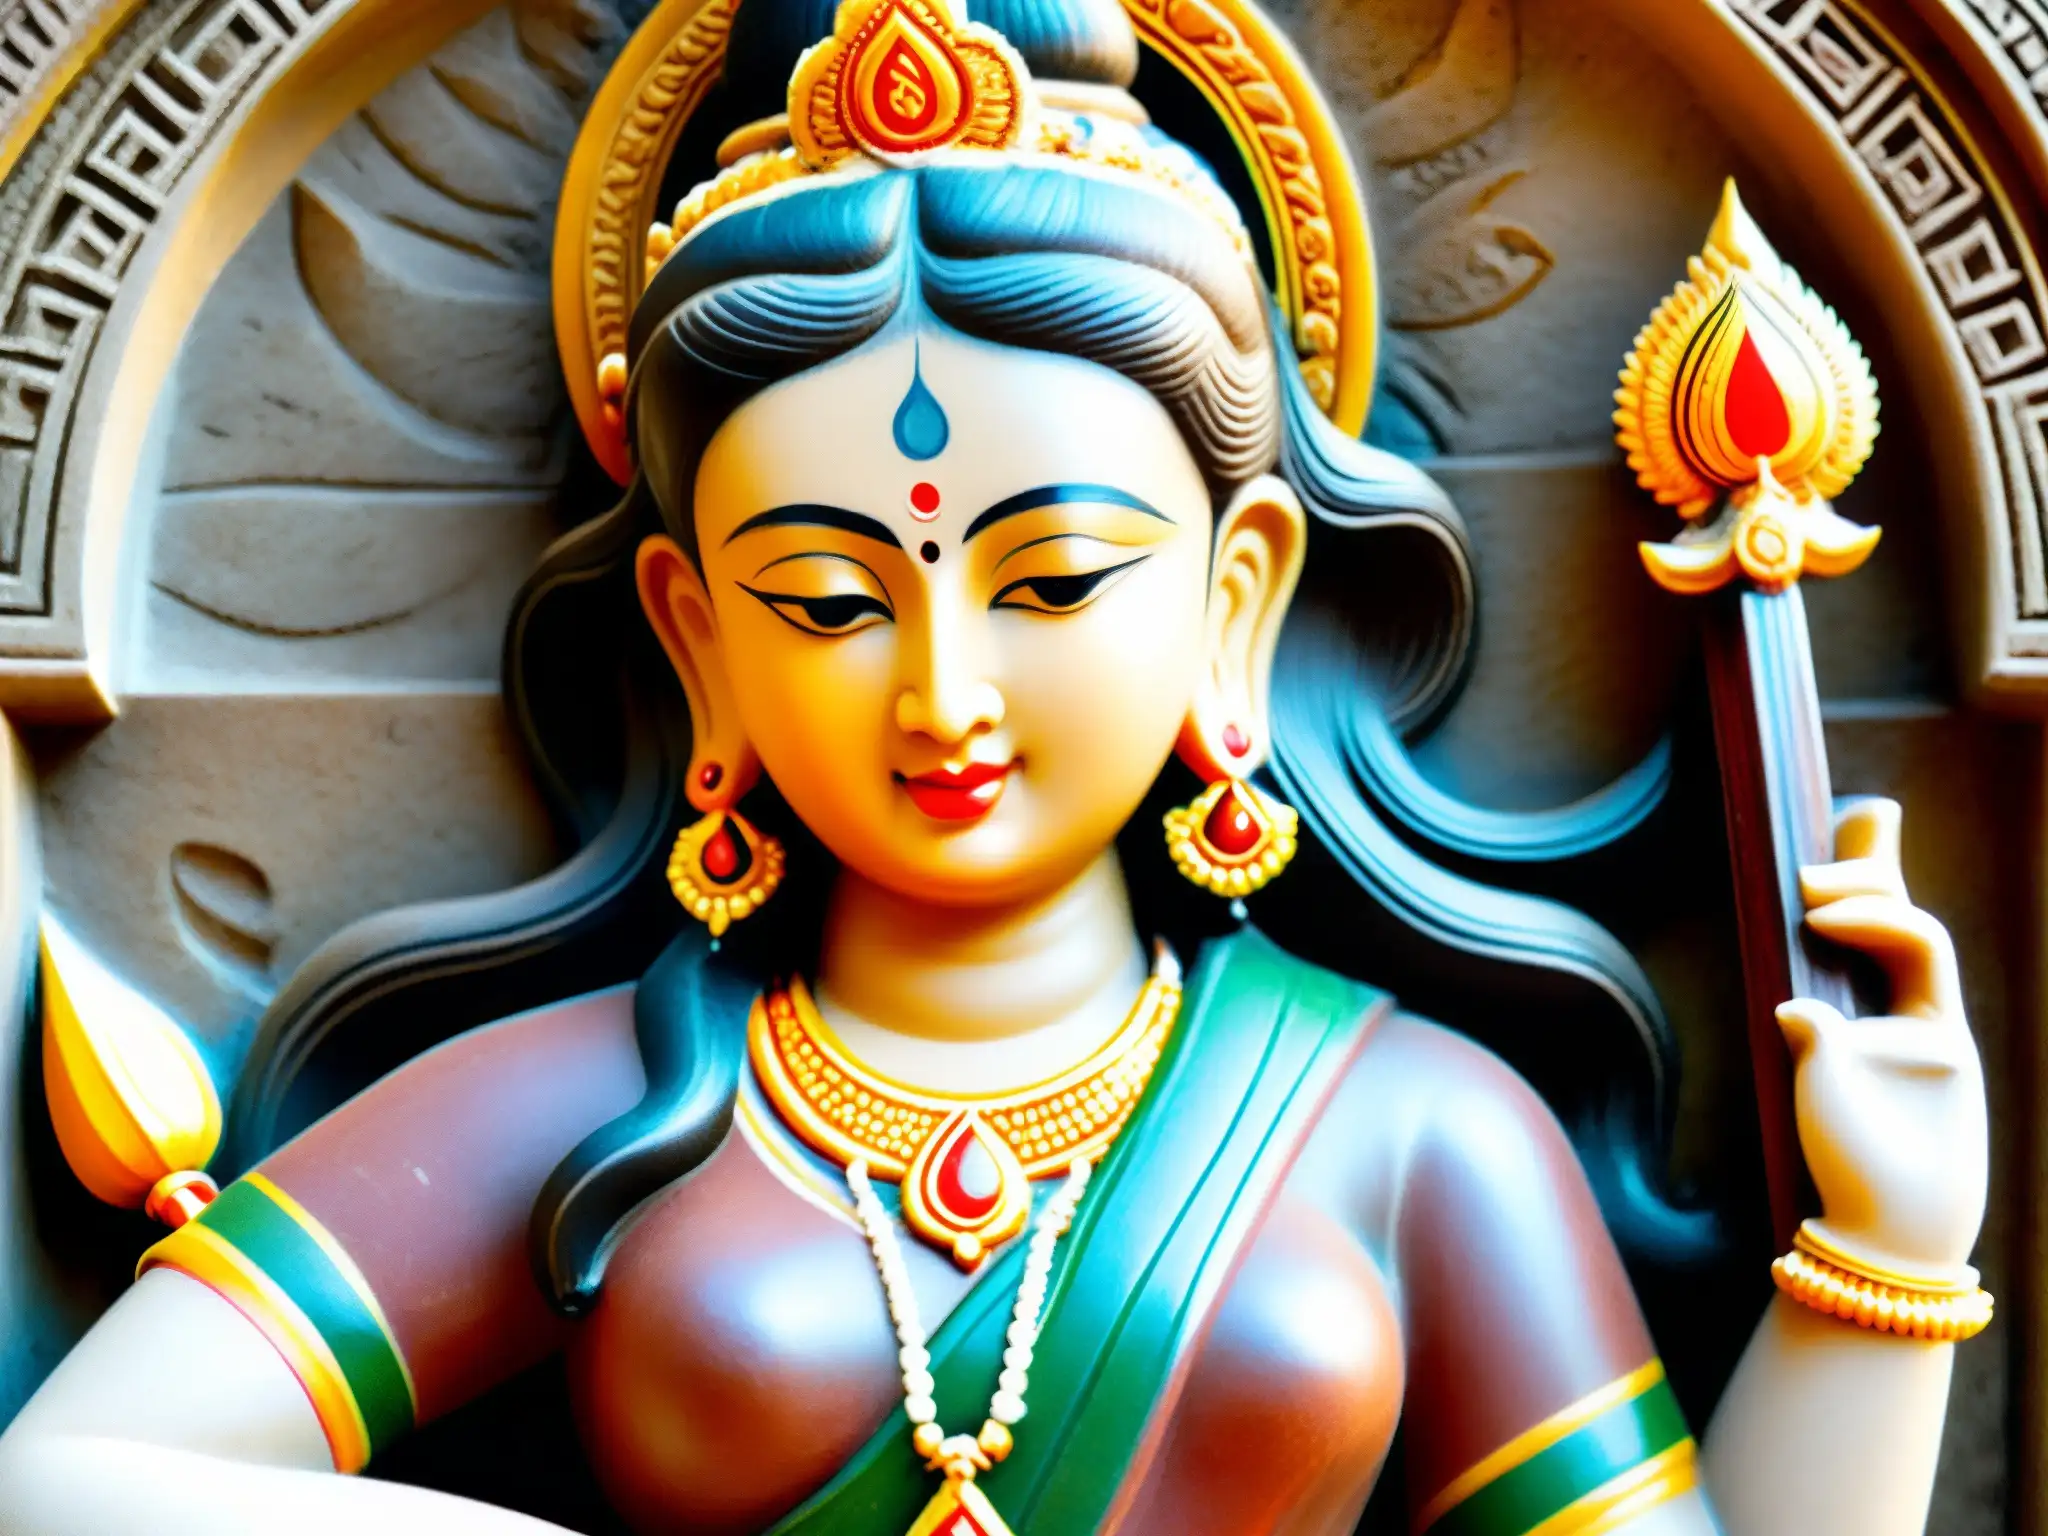 La imagen muestra una talla de la diosa hindú Saraswati, exudando sabiduría y tranquilidad